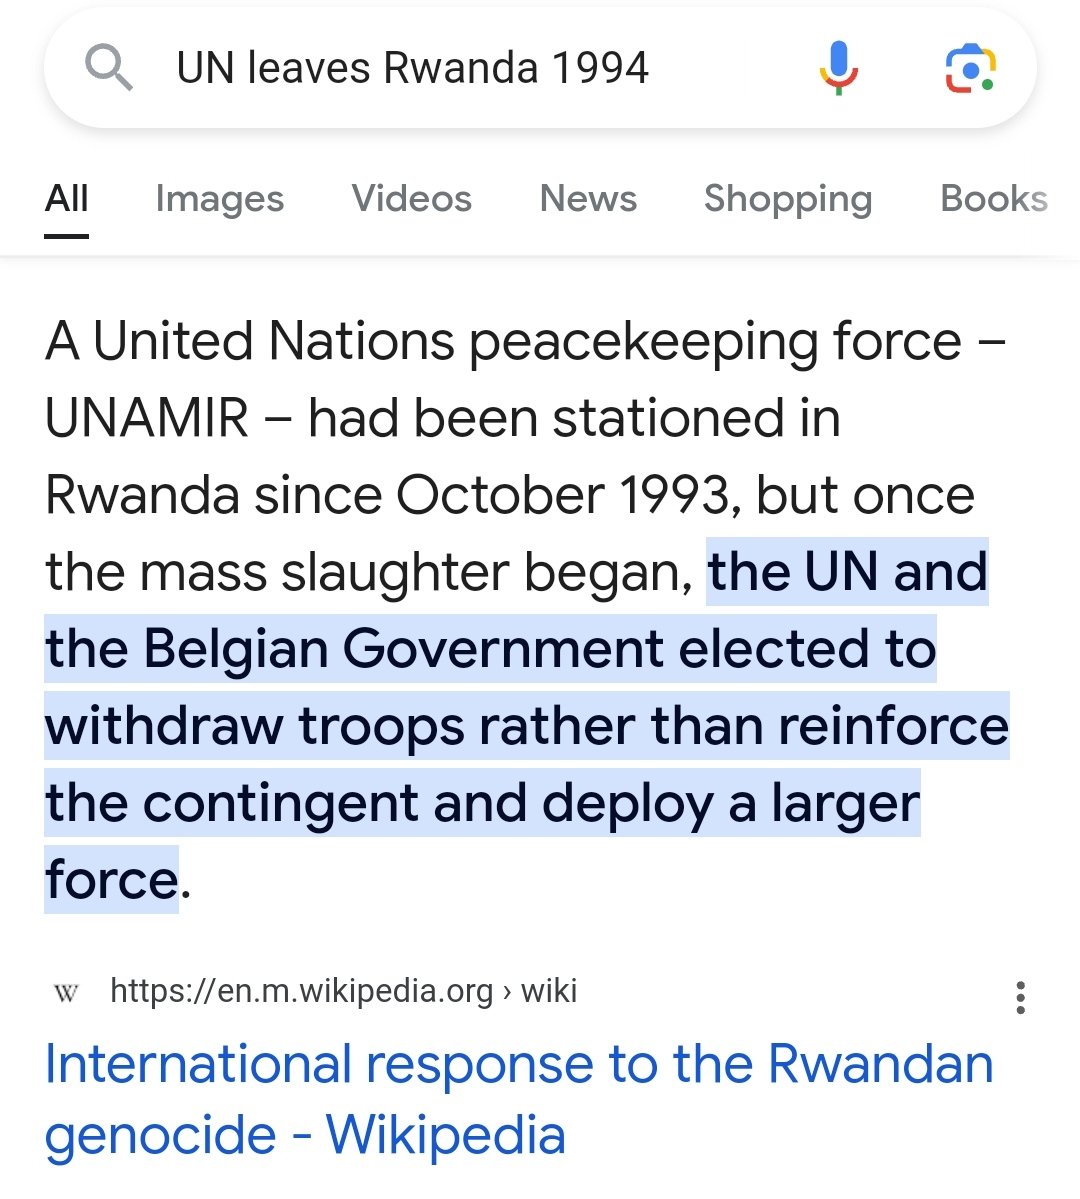 @RwandaN41033494 @UN We will not allow you to tell lies!